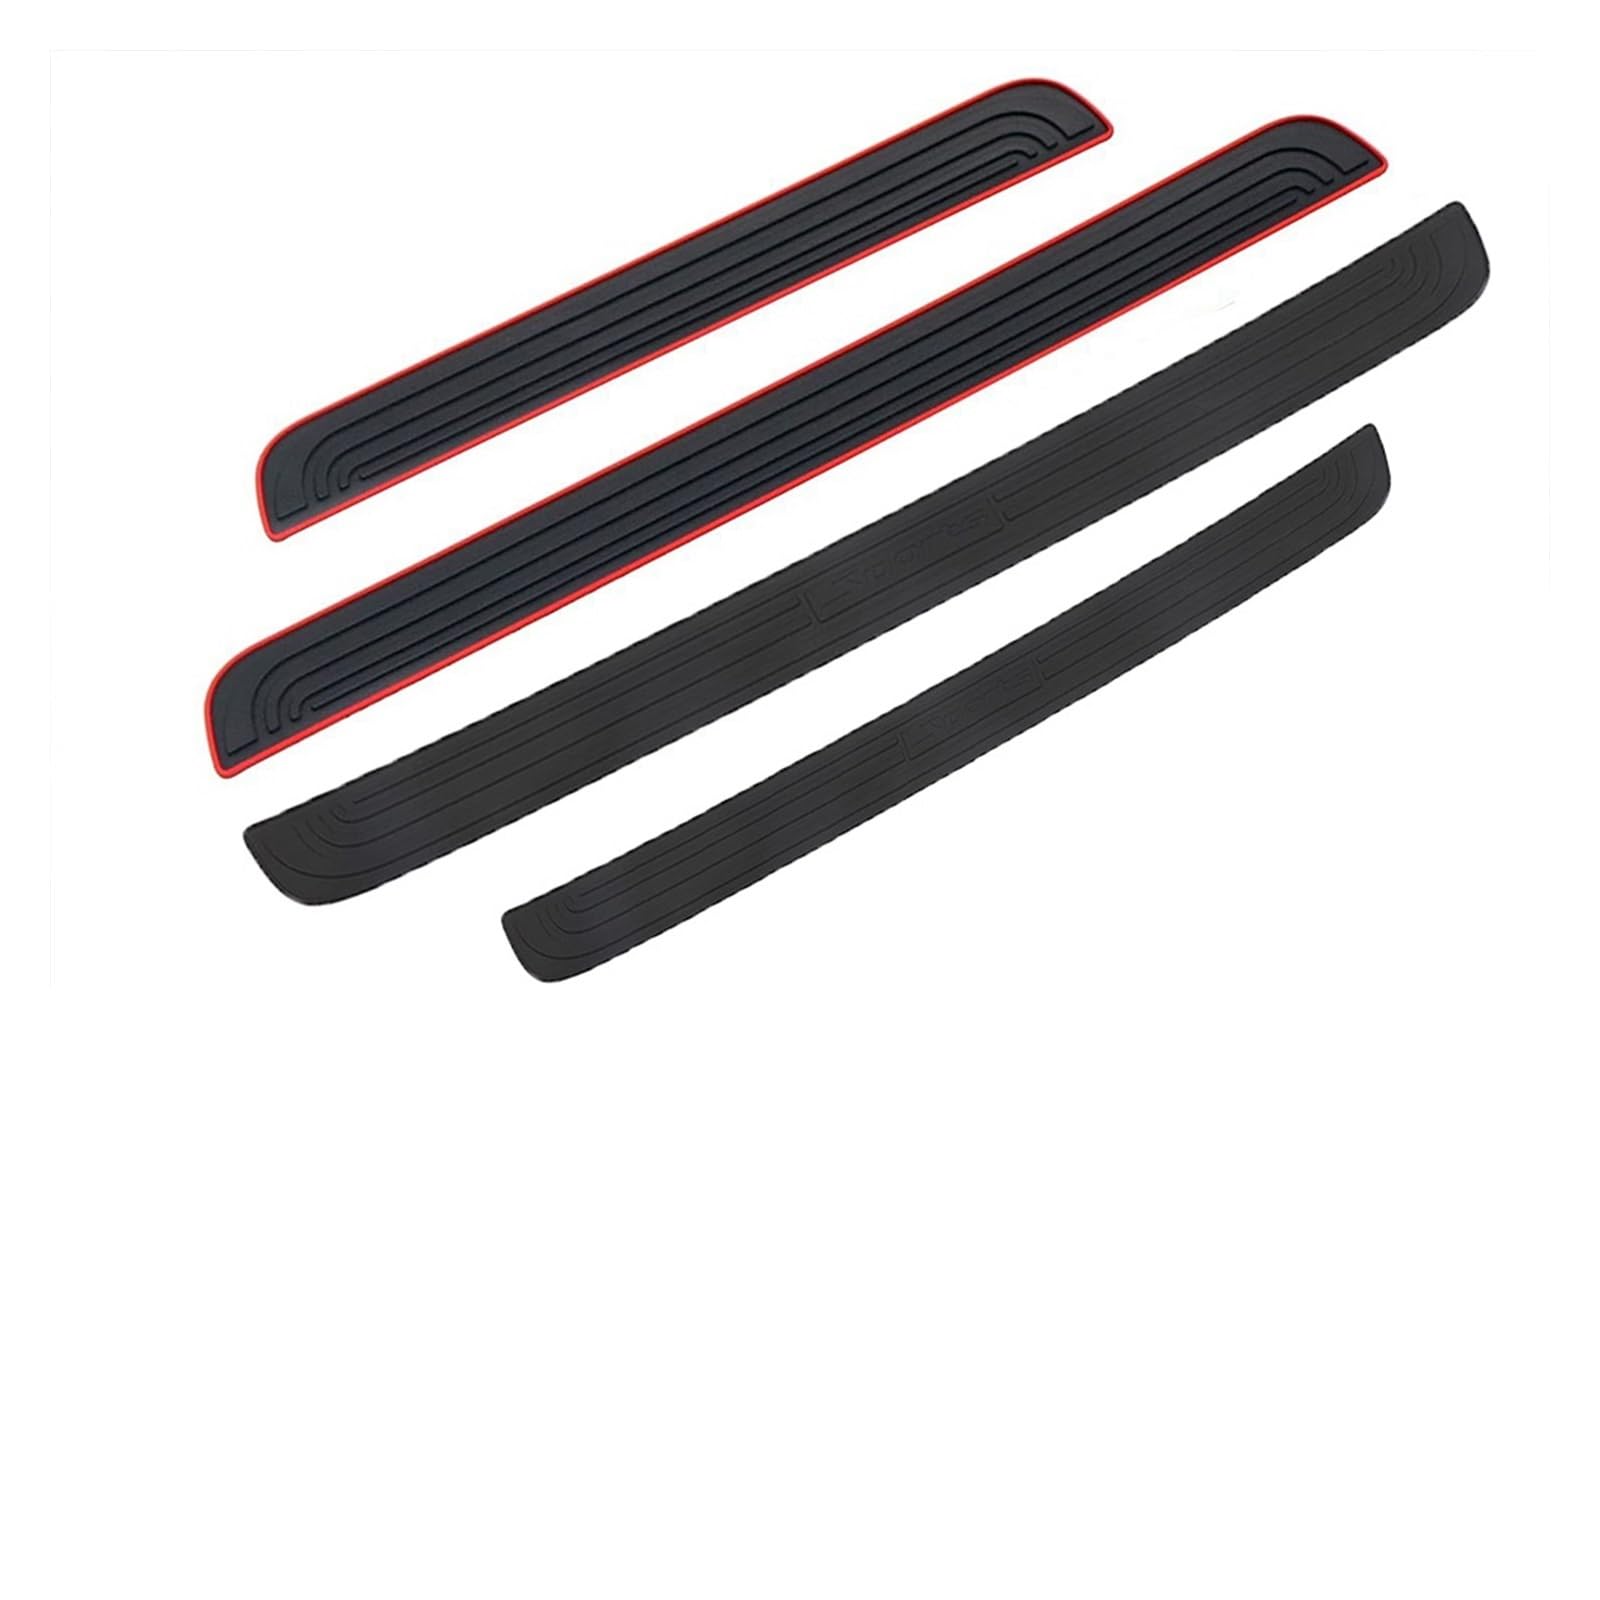 104 cm 90 cm Auto Stamm Tür Sill Platte Schutz Hinten Stoßstange Schutz Gummi Formteile Pad Trim Abdeckung Streifen Auto styling(Black Red-104cmx9cm) von MIXOAE